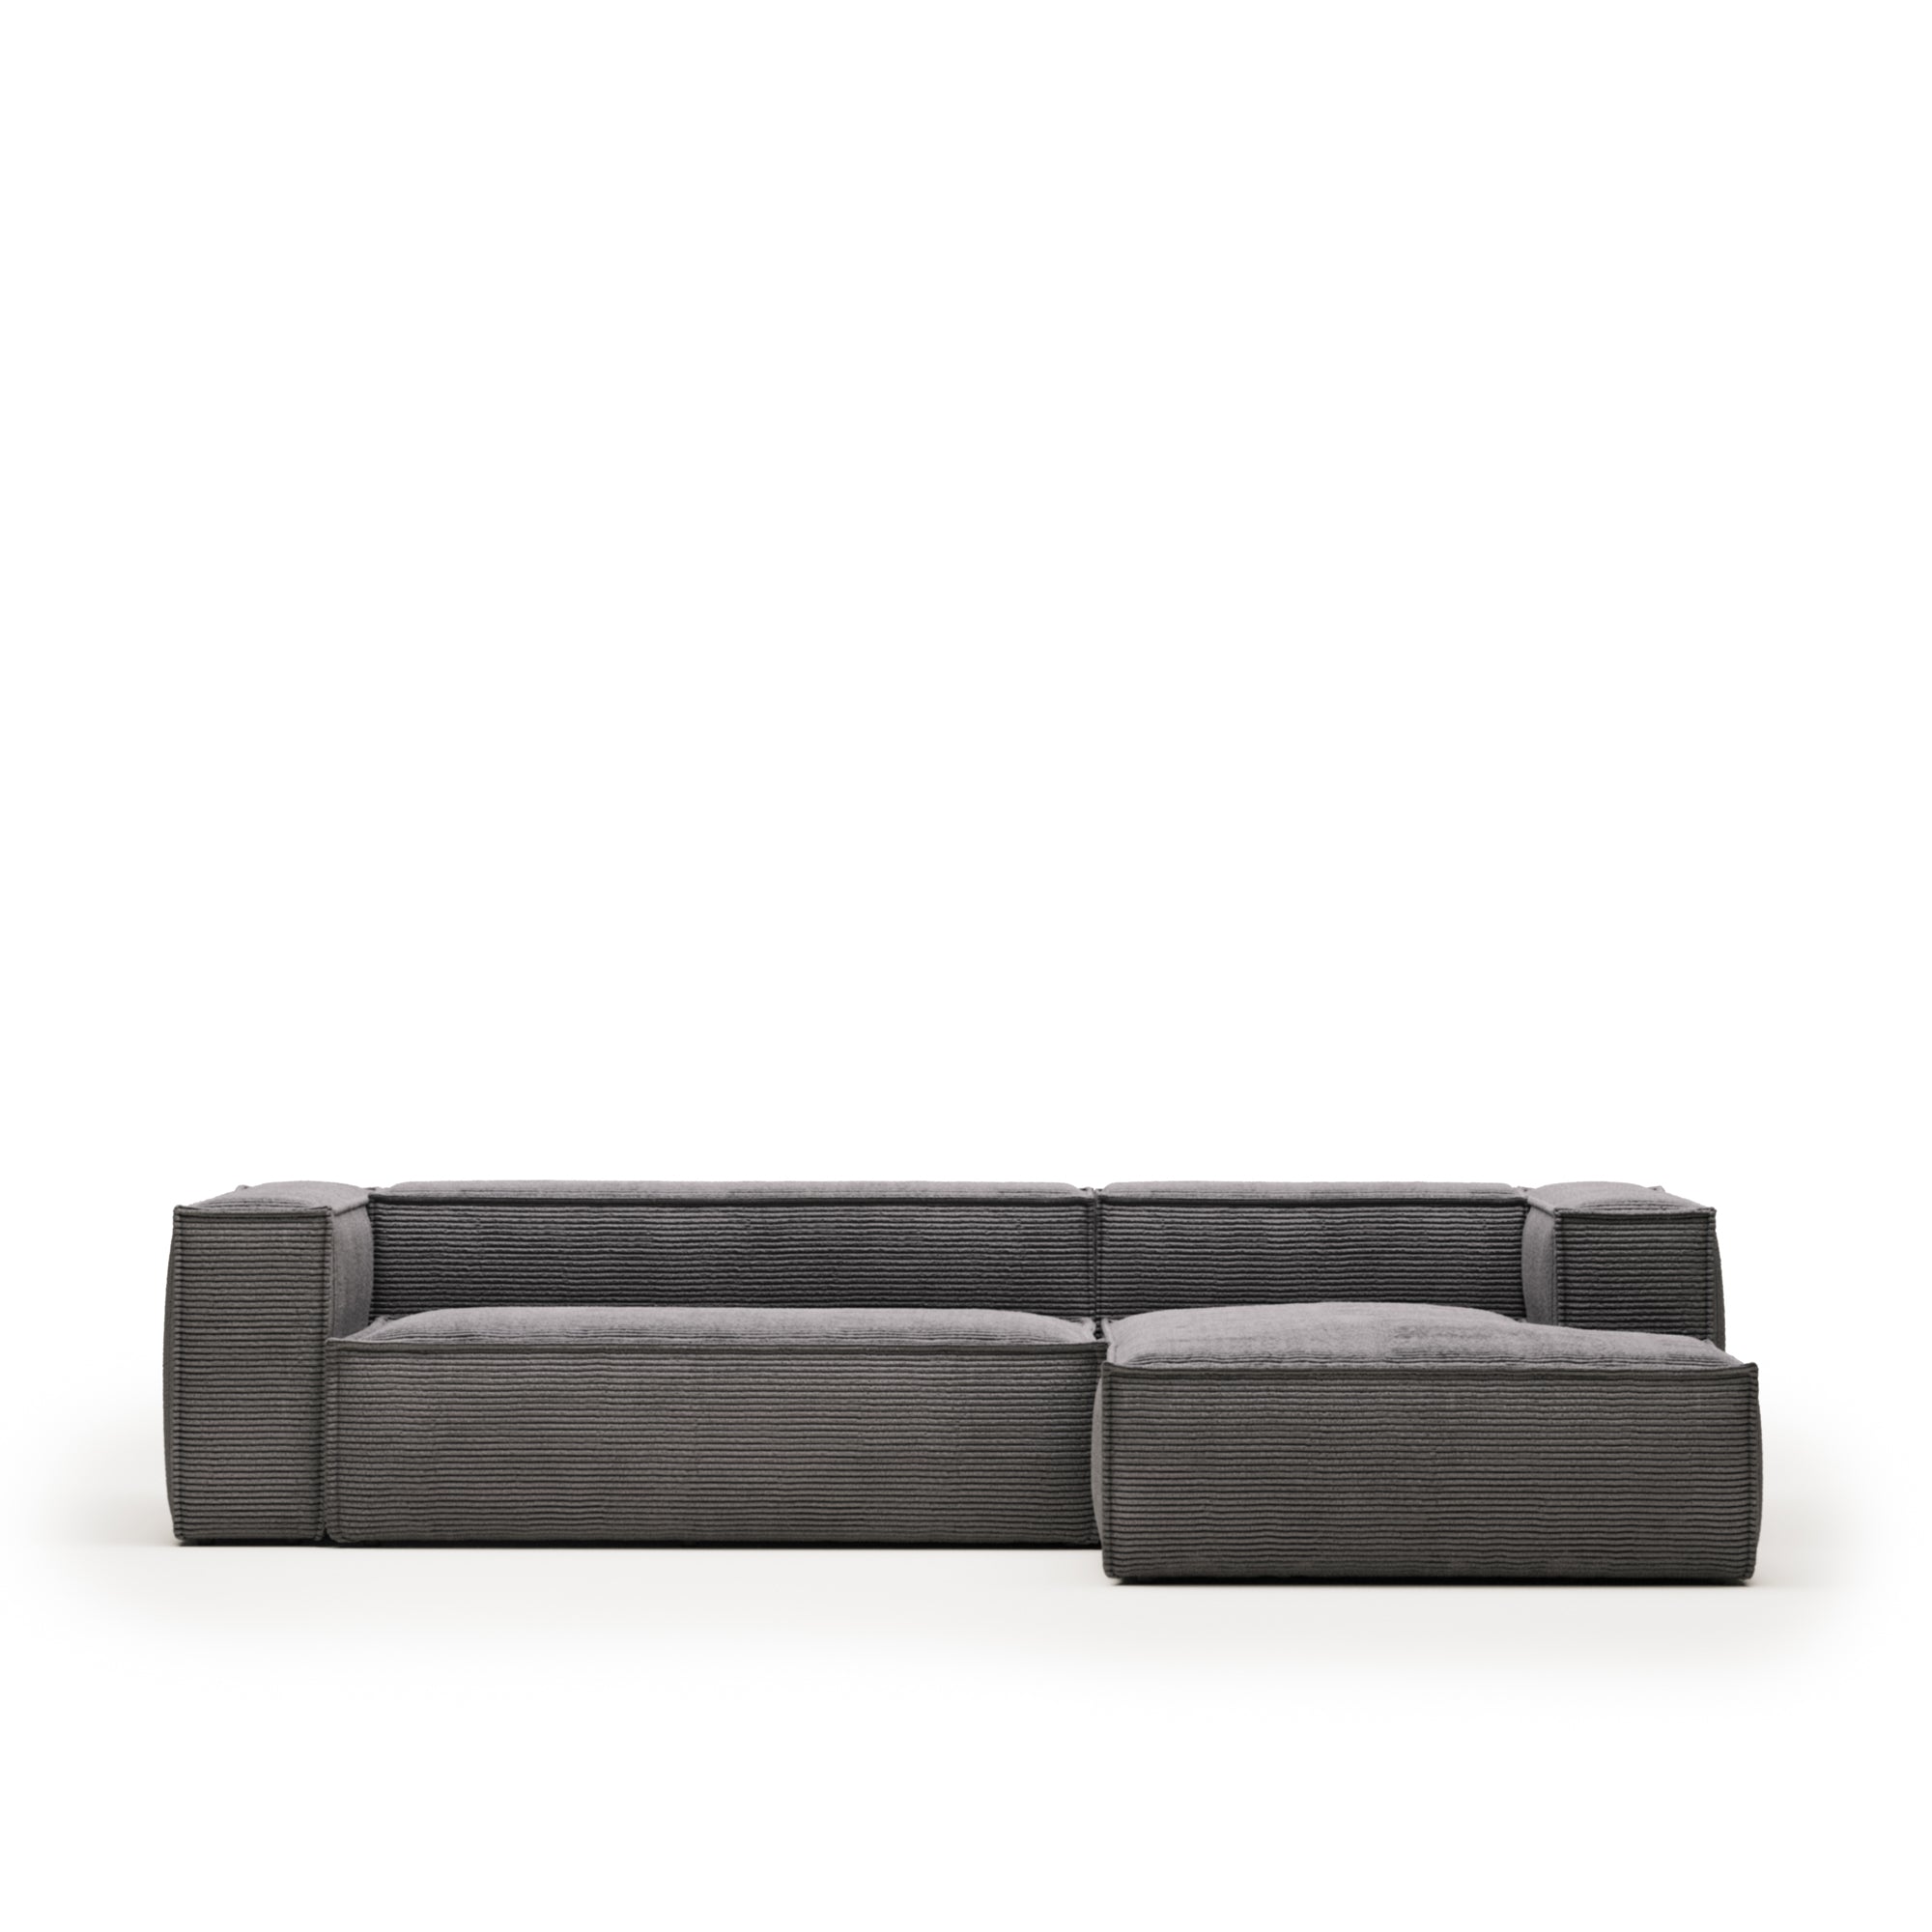 Blok 3 személyes kanapé jobb oldali fekvőfotellel, szürke, széles varrású kordbársonyból, 300 cm